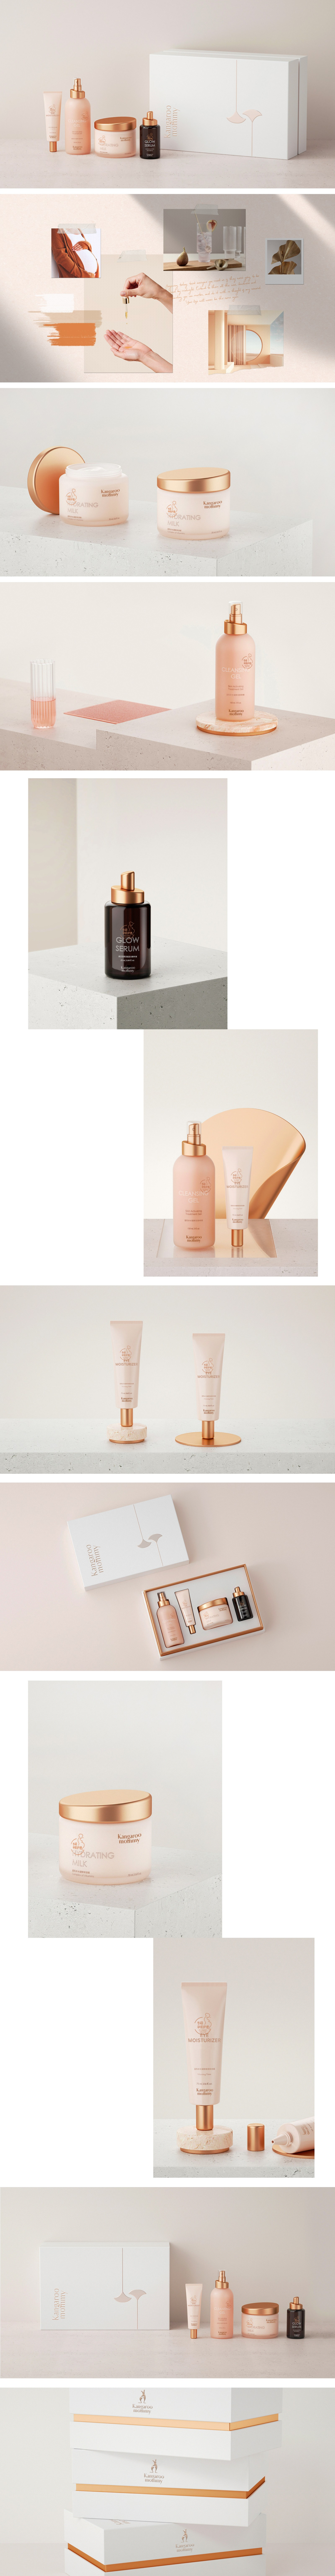 孕妇护肤品牌策划设计-化妆品包装设计-杭州达岸品牌策划设计公司